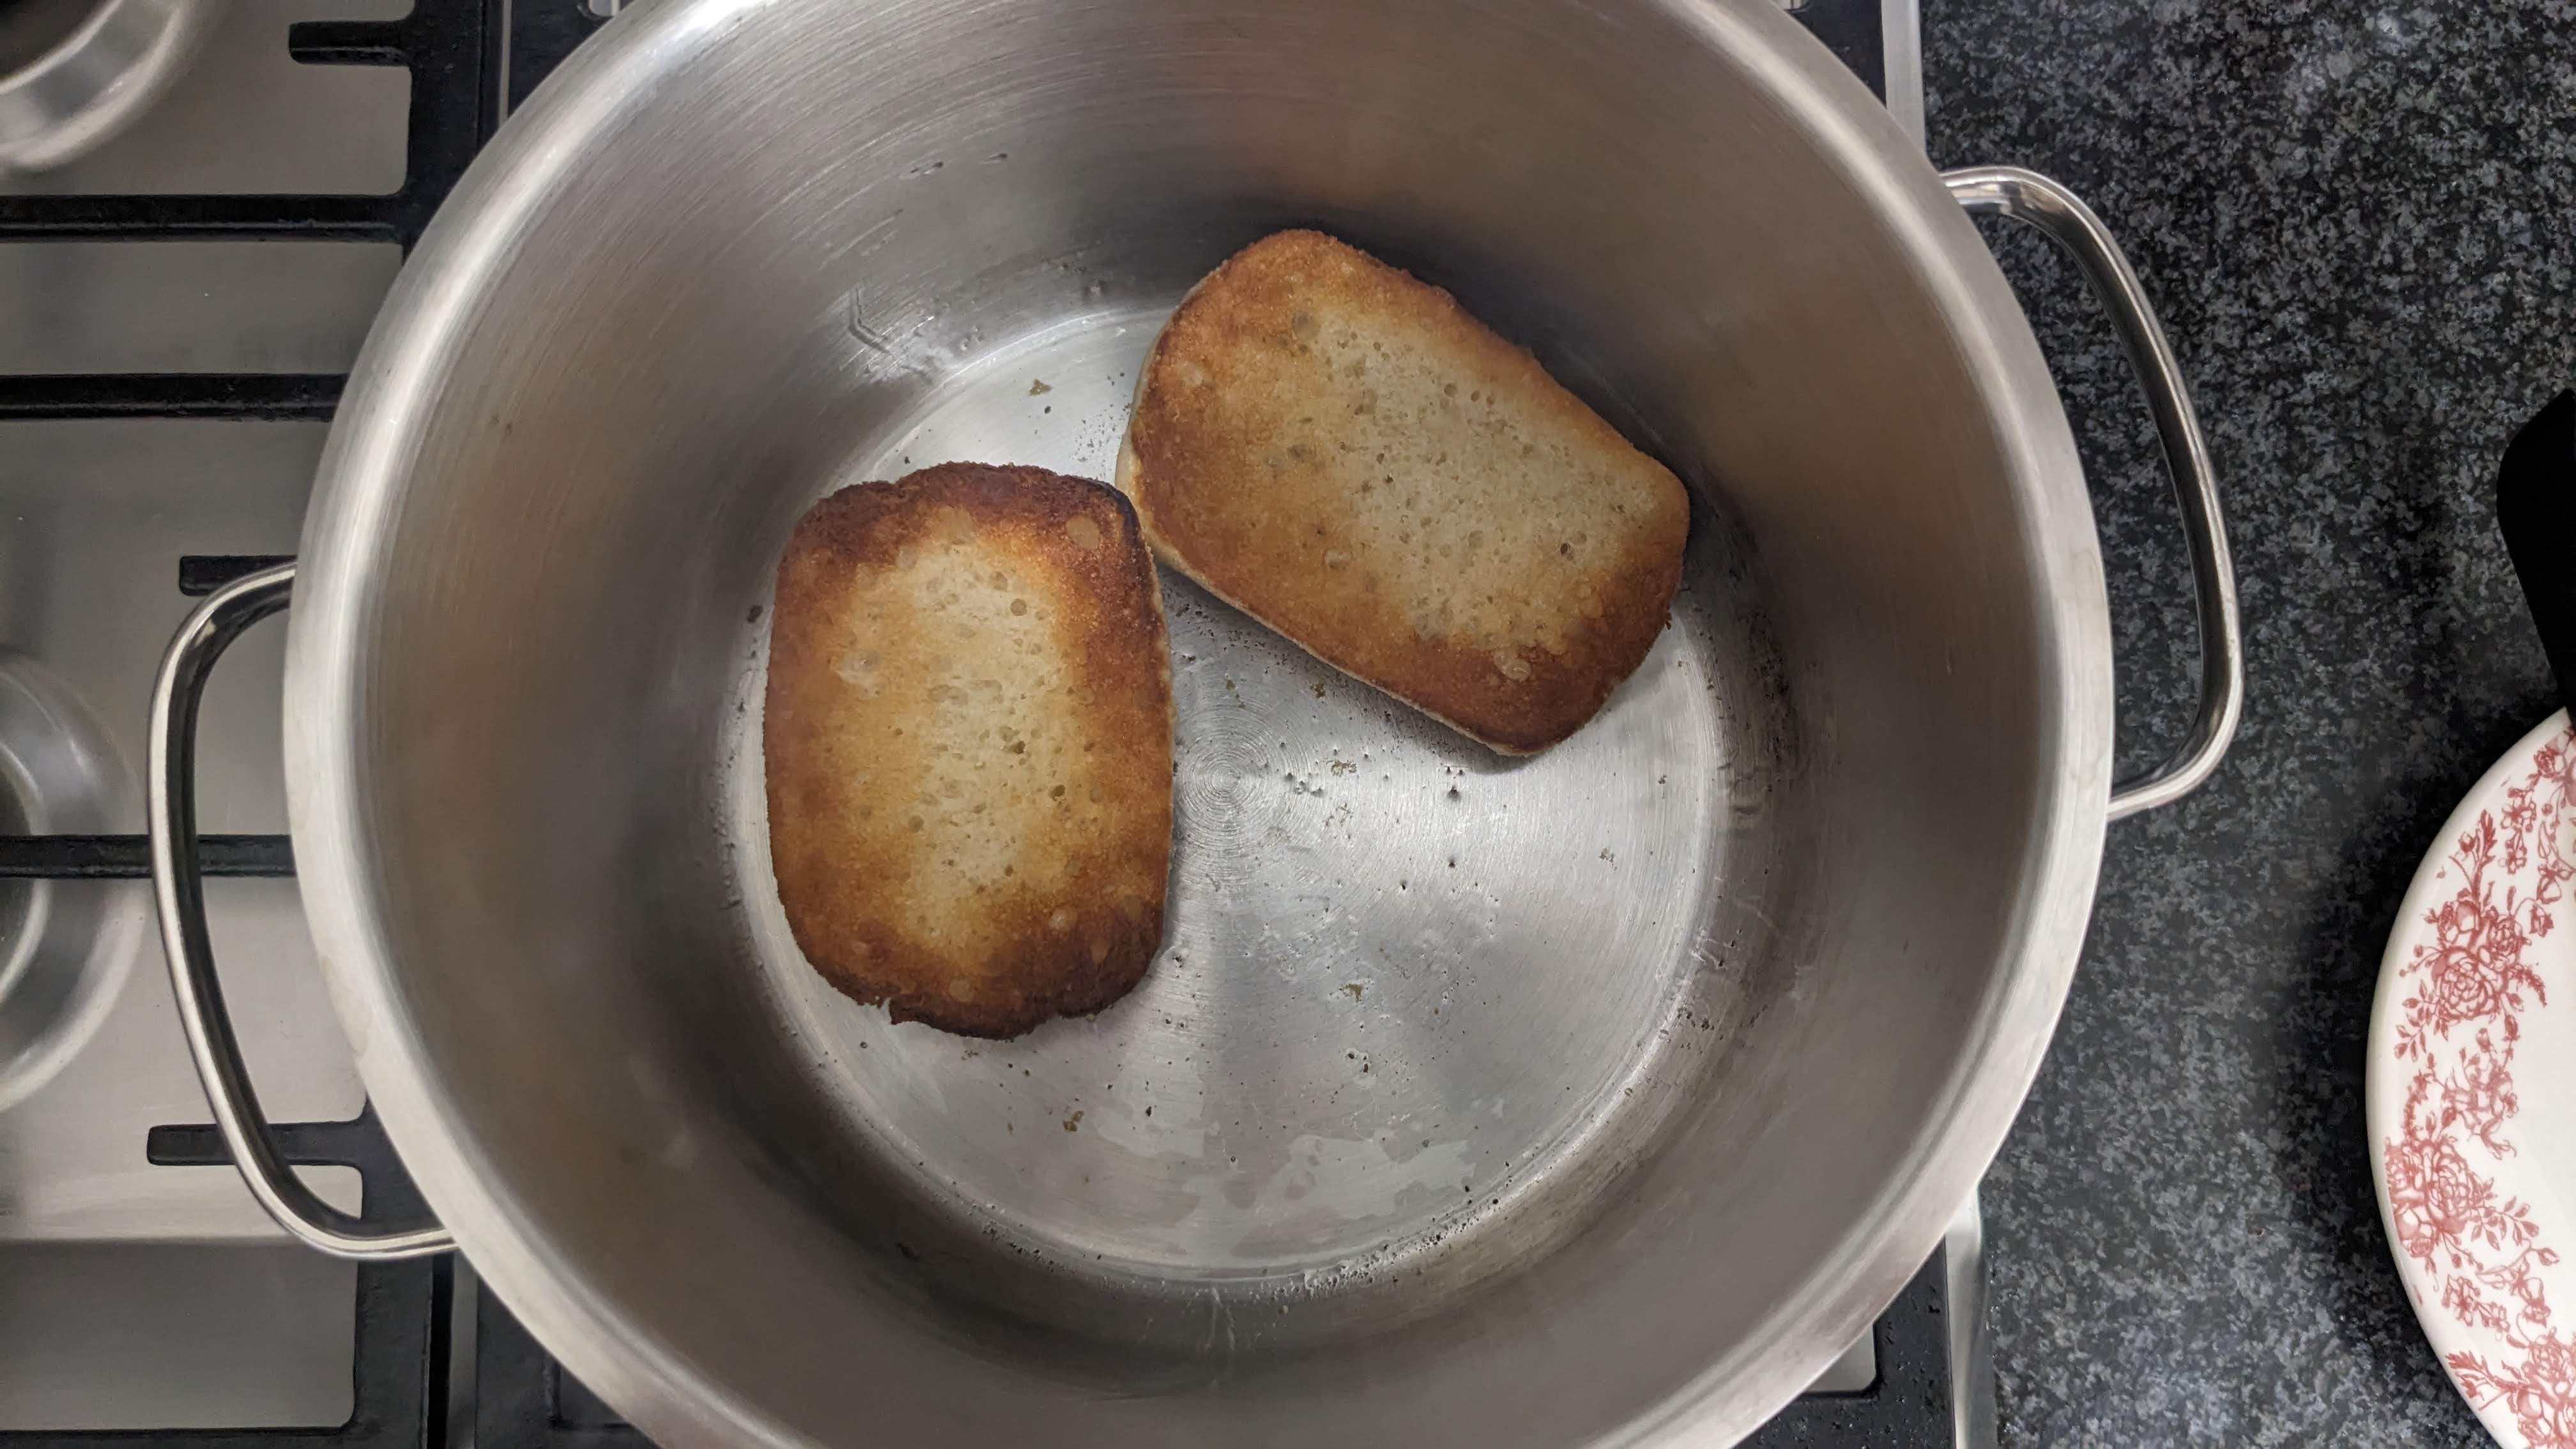 Fried bread